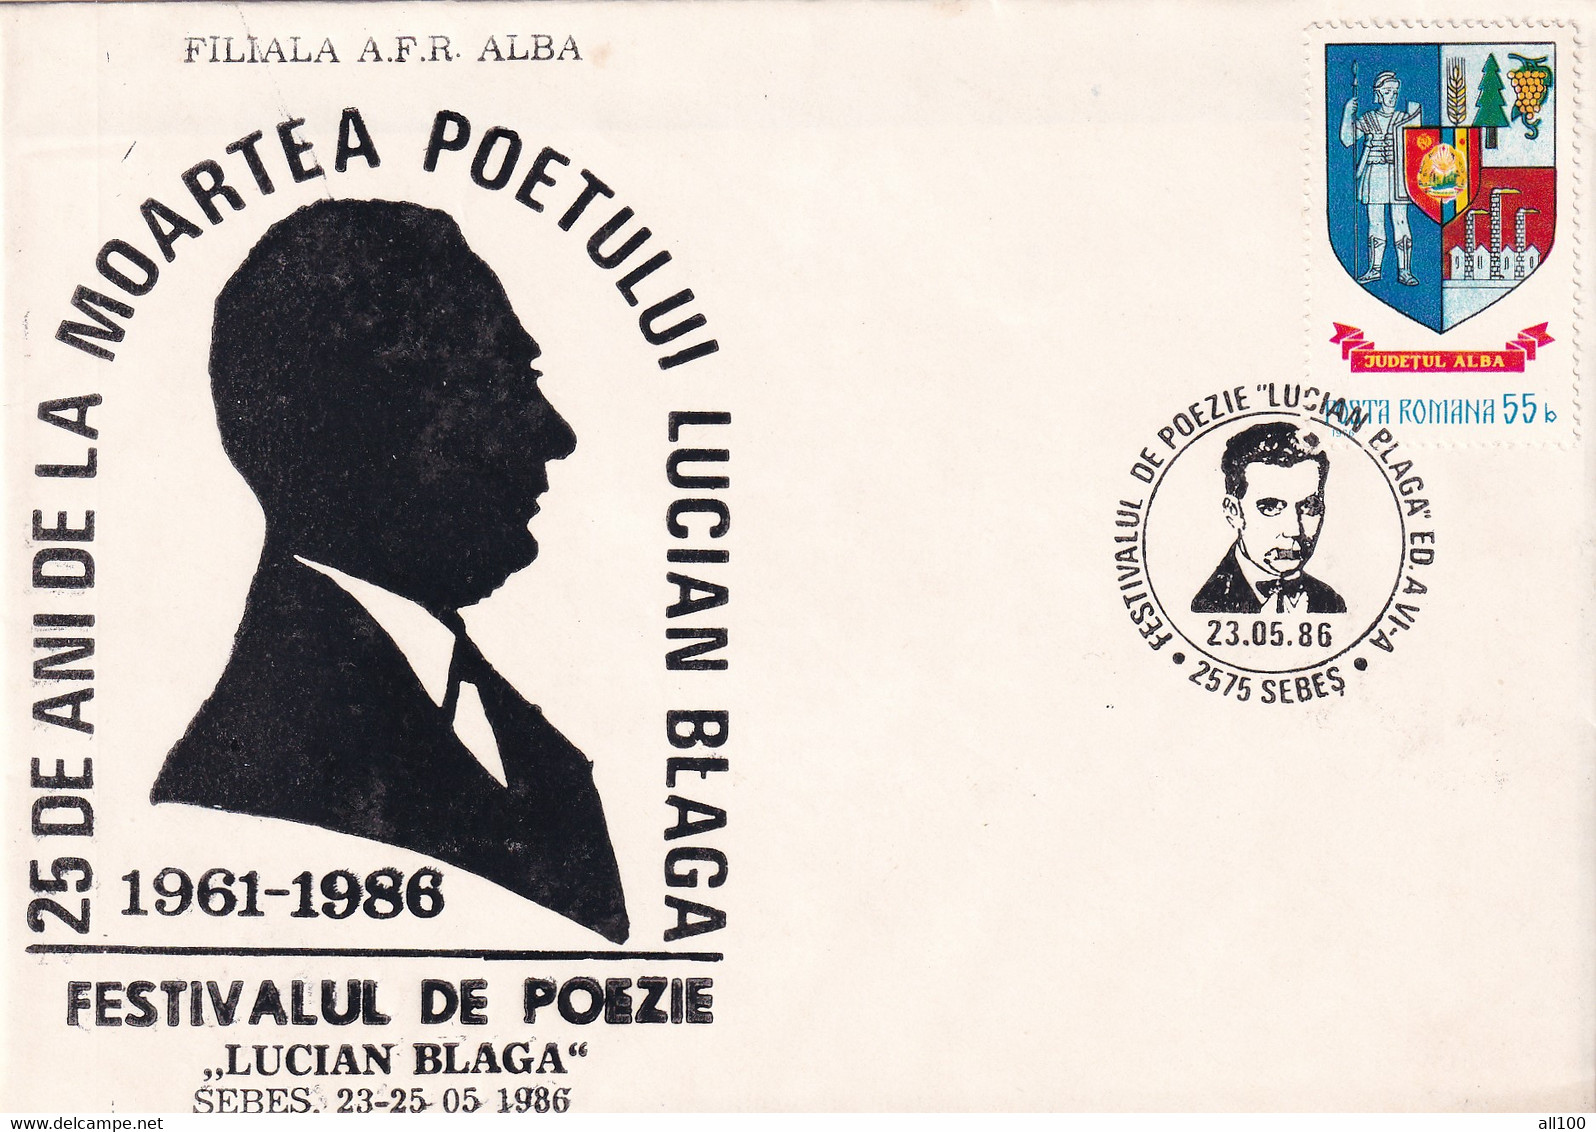 A19348 - 25 ANI DE LA MOARTEA POETULUI LUCIAN BLAGA COVER ENVELOPE UNUSED 1986 REPUBLICA SOCIALISTA ROMANIA RSR - Covers & Documents